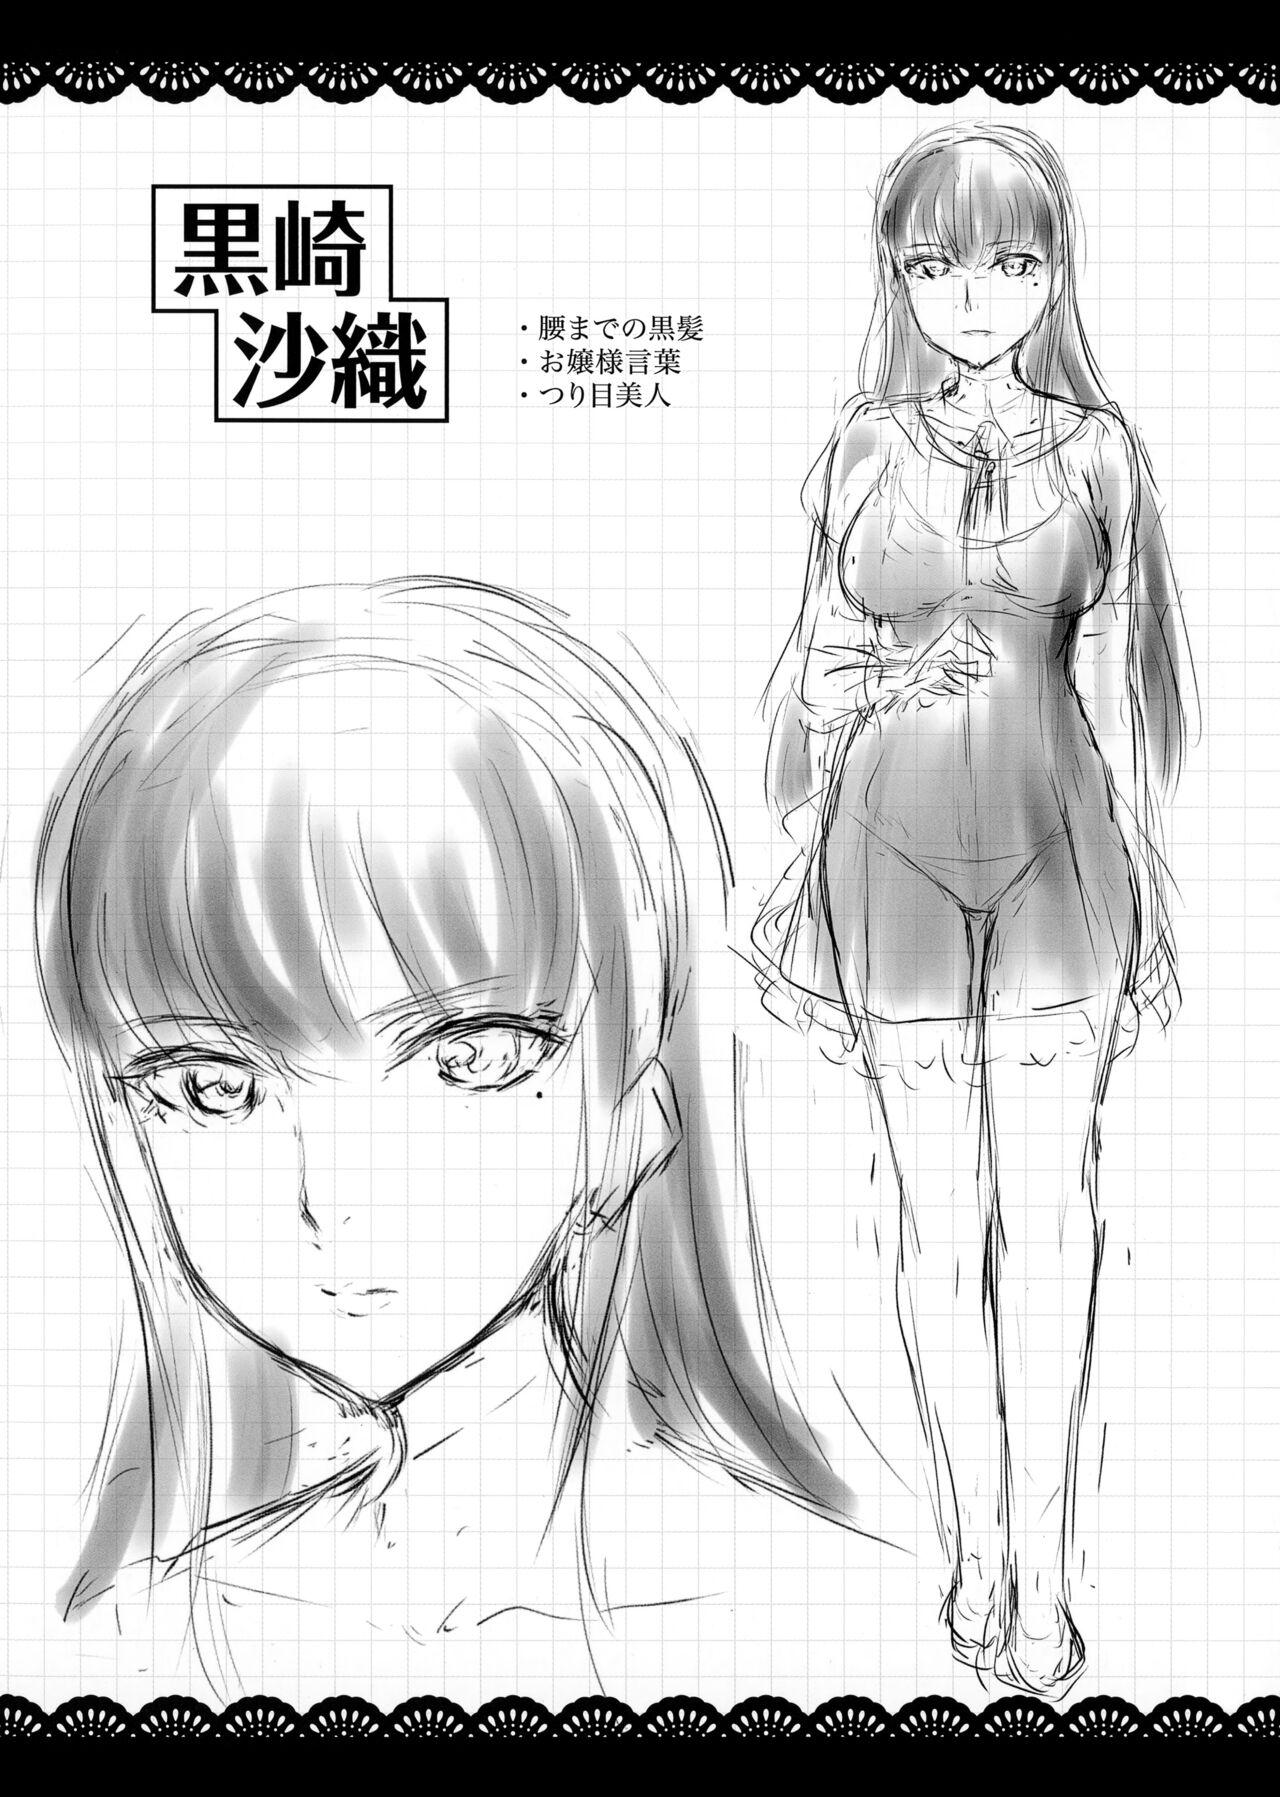 Shirushi Melonbooks Gentei Shousasshi Character Settei Shuu 2